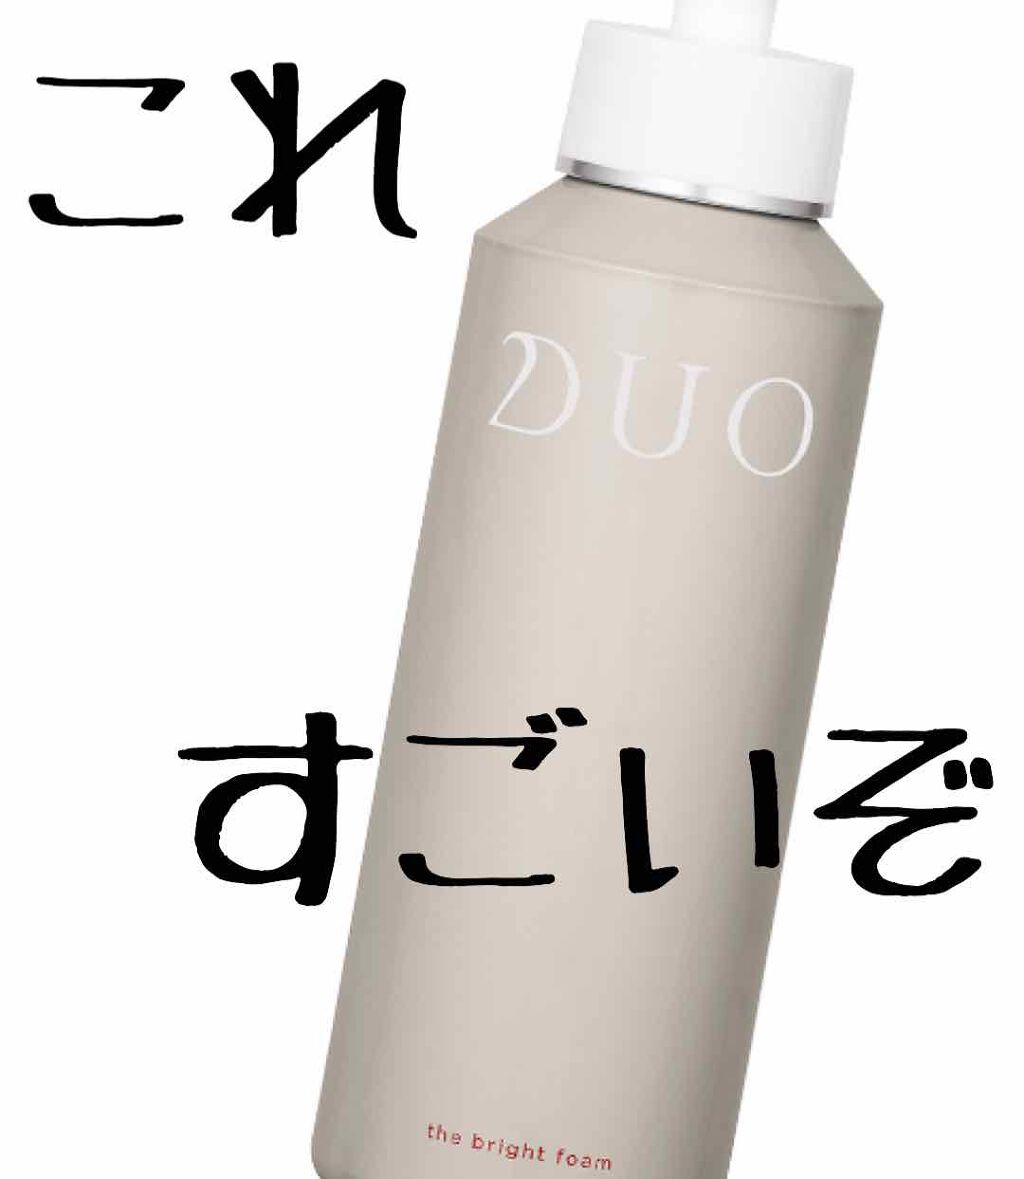 DUO(デュオ) ザ ブライトフォーム(150g)